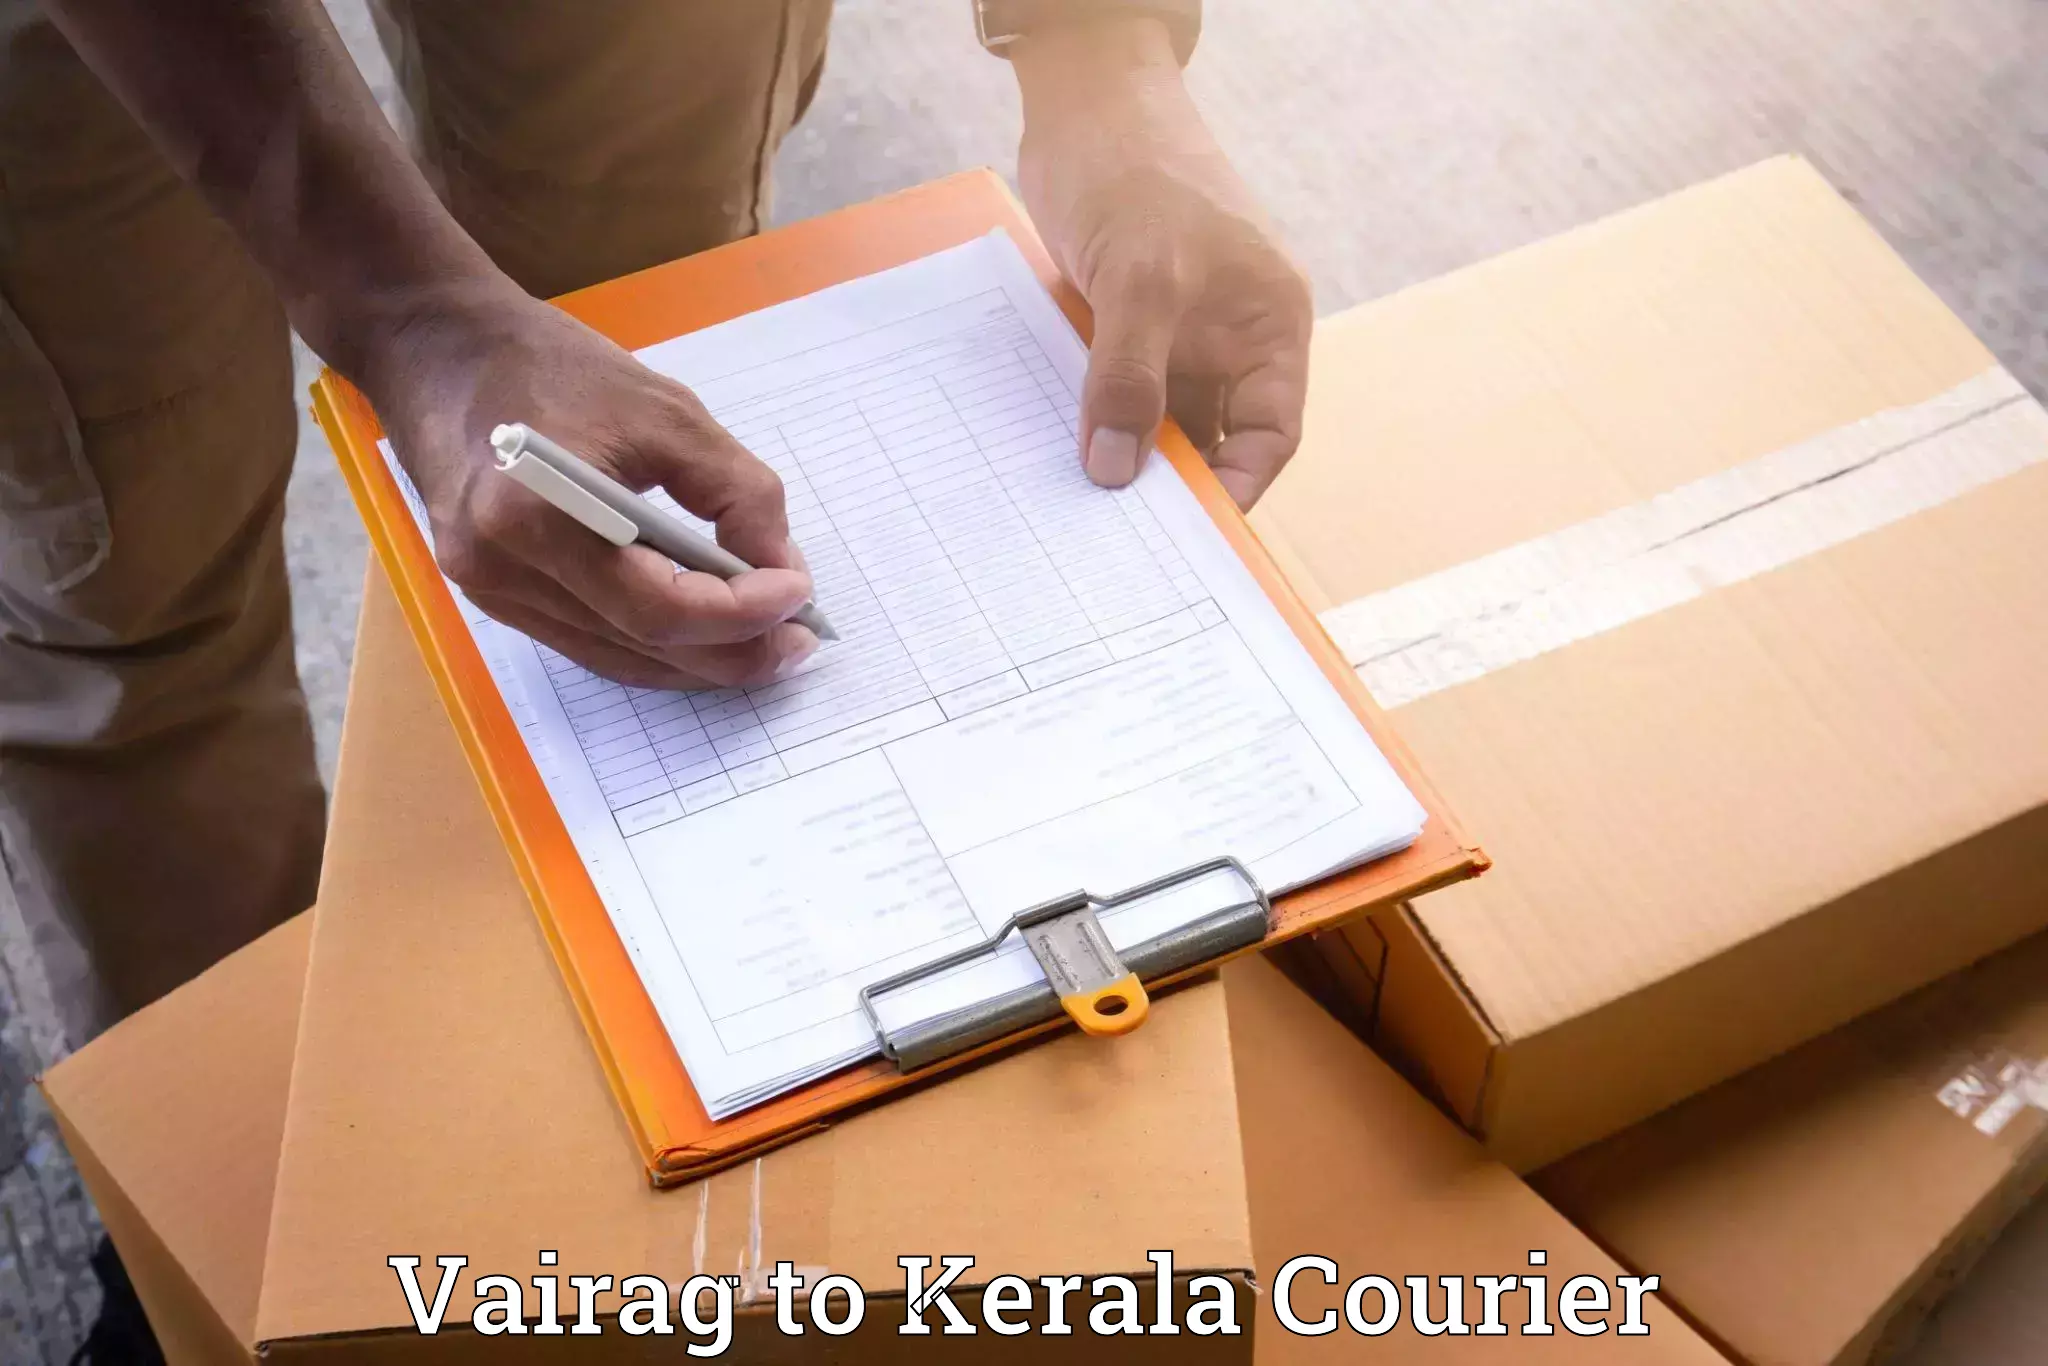 Furniture relocation experts Vairag to Adoor